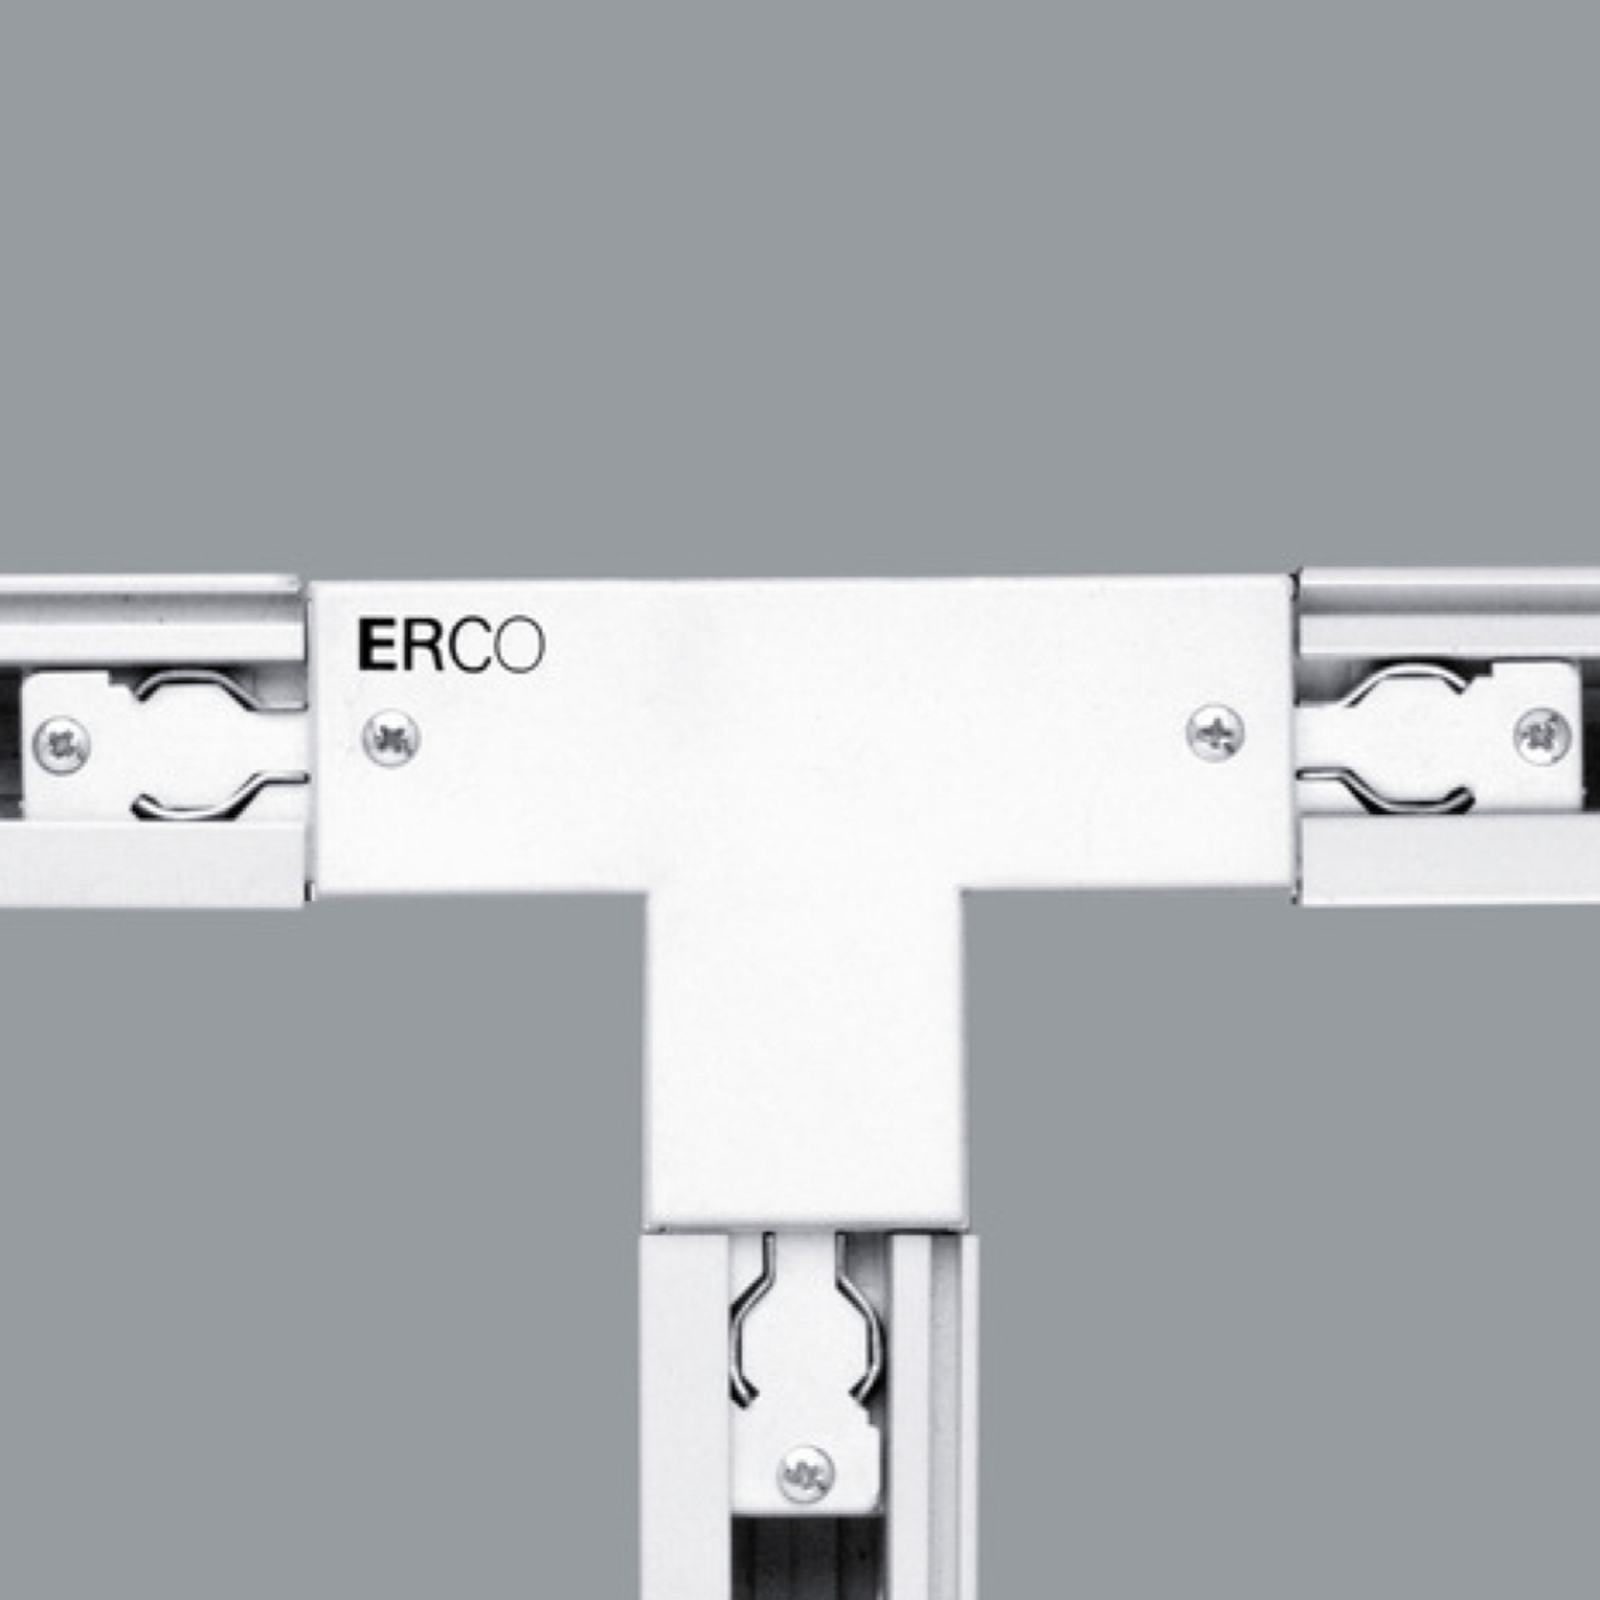 ERCO 3-faset T-kontakt jord høyre, hvit